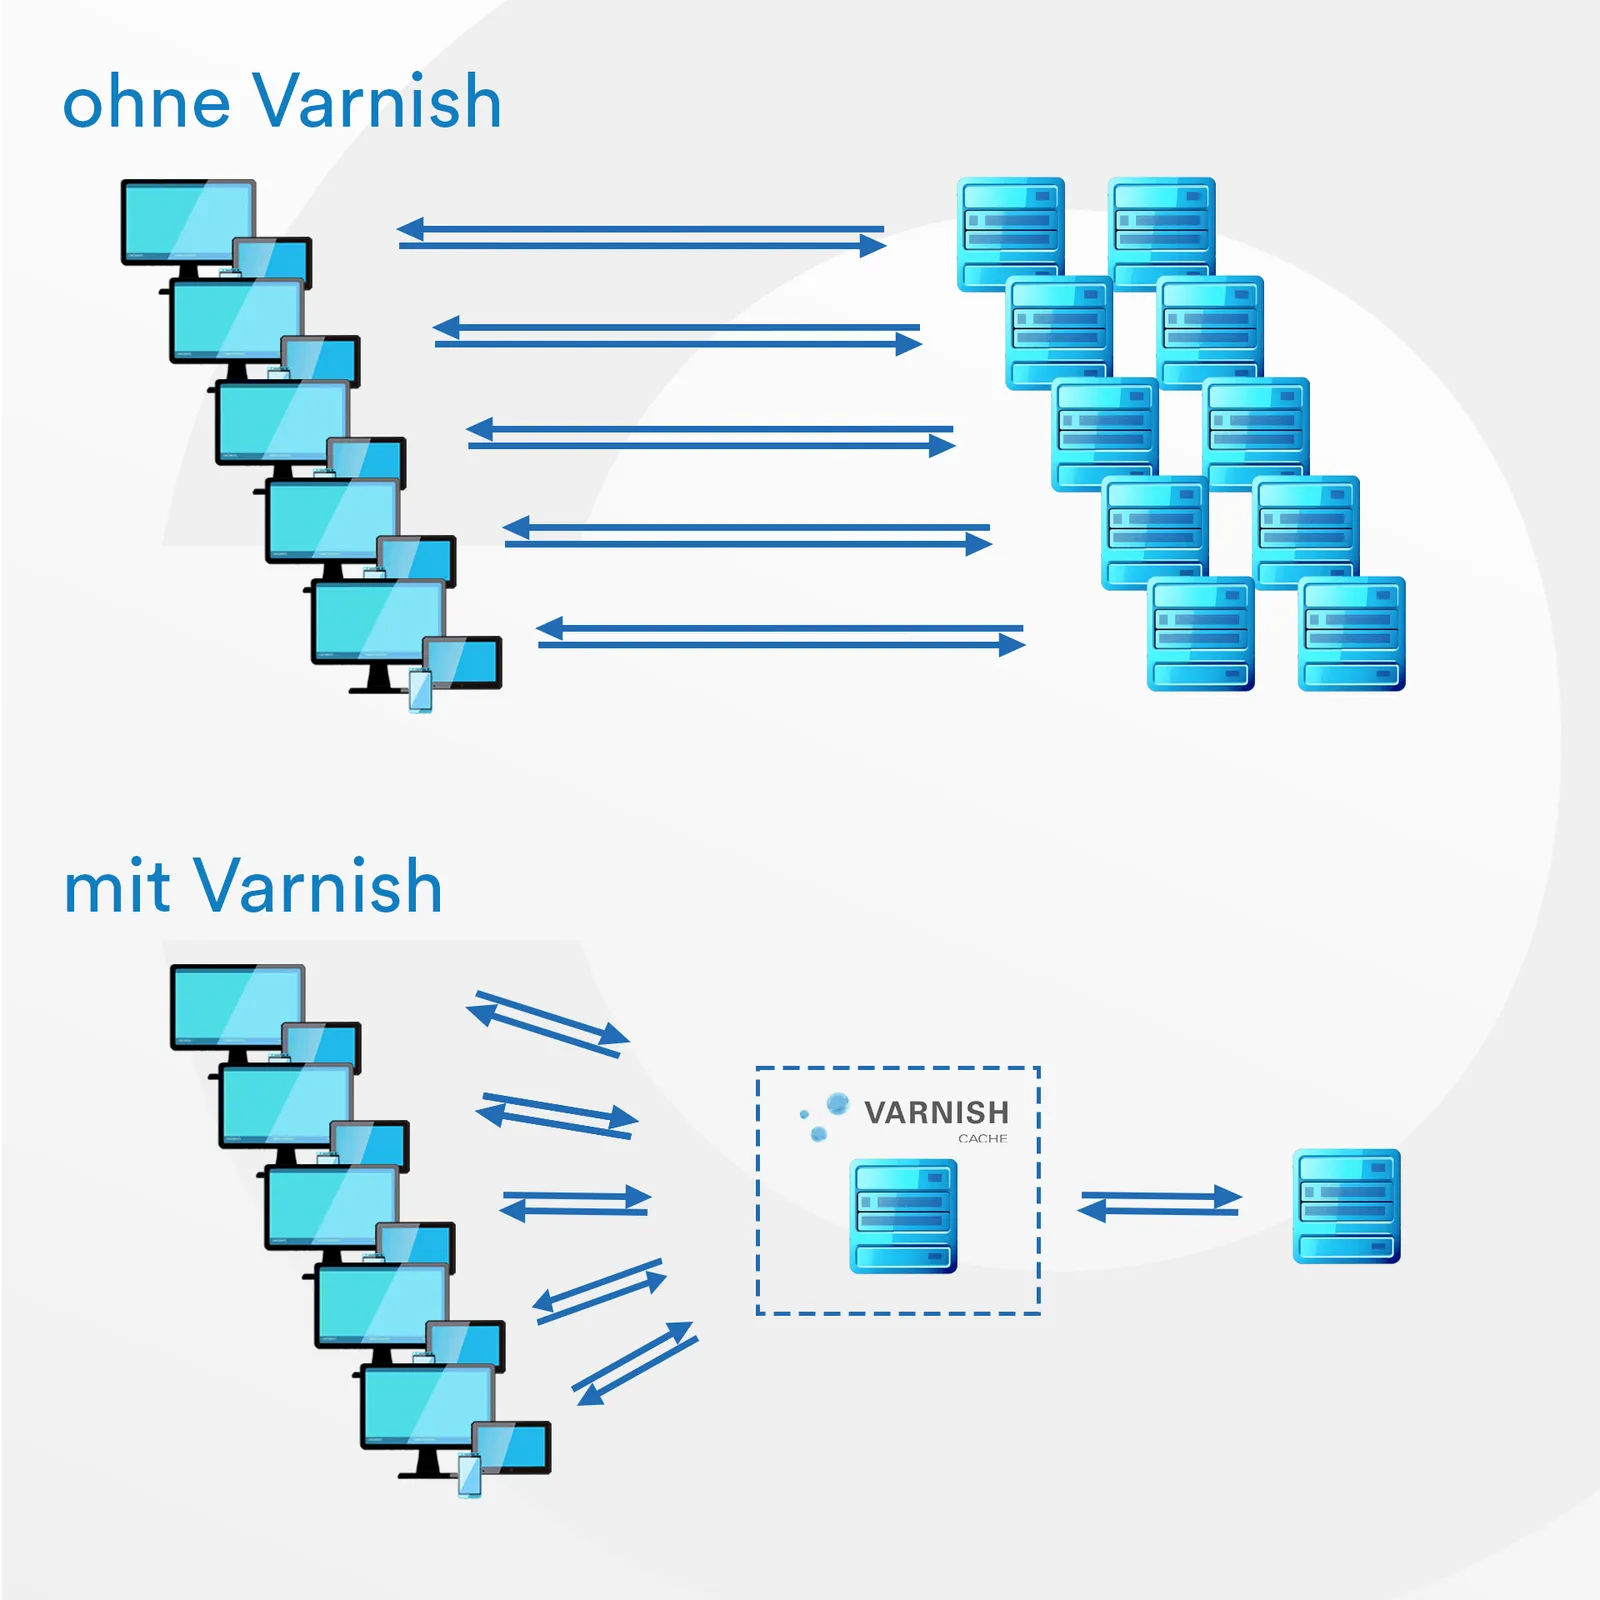 Oben: "Ohne Varnish": Viele Endgeräte, die mit vielen Servern in Kontakt stehen. Unten: "Mit Varnish": Viele Endgeräte, die fast alle angeforderten Inhalte direkt von einem Varnish Cache Server erhalten, so dass nur noch ein weiterer Server nötig ist.